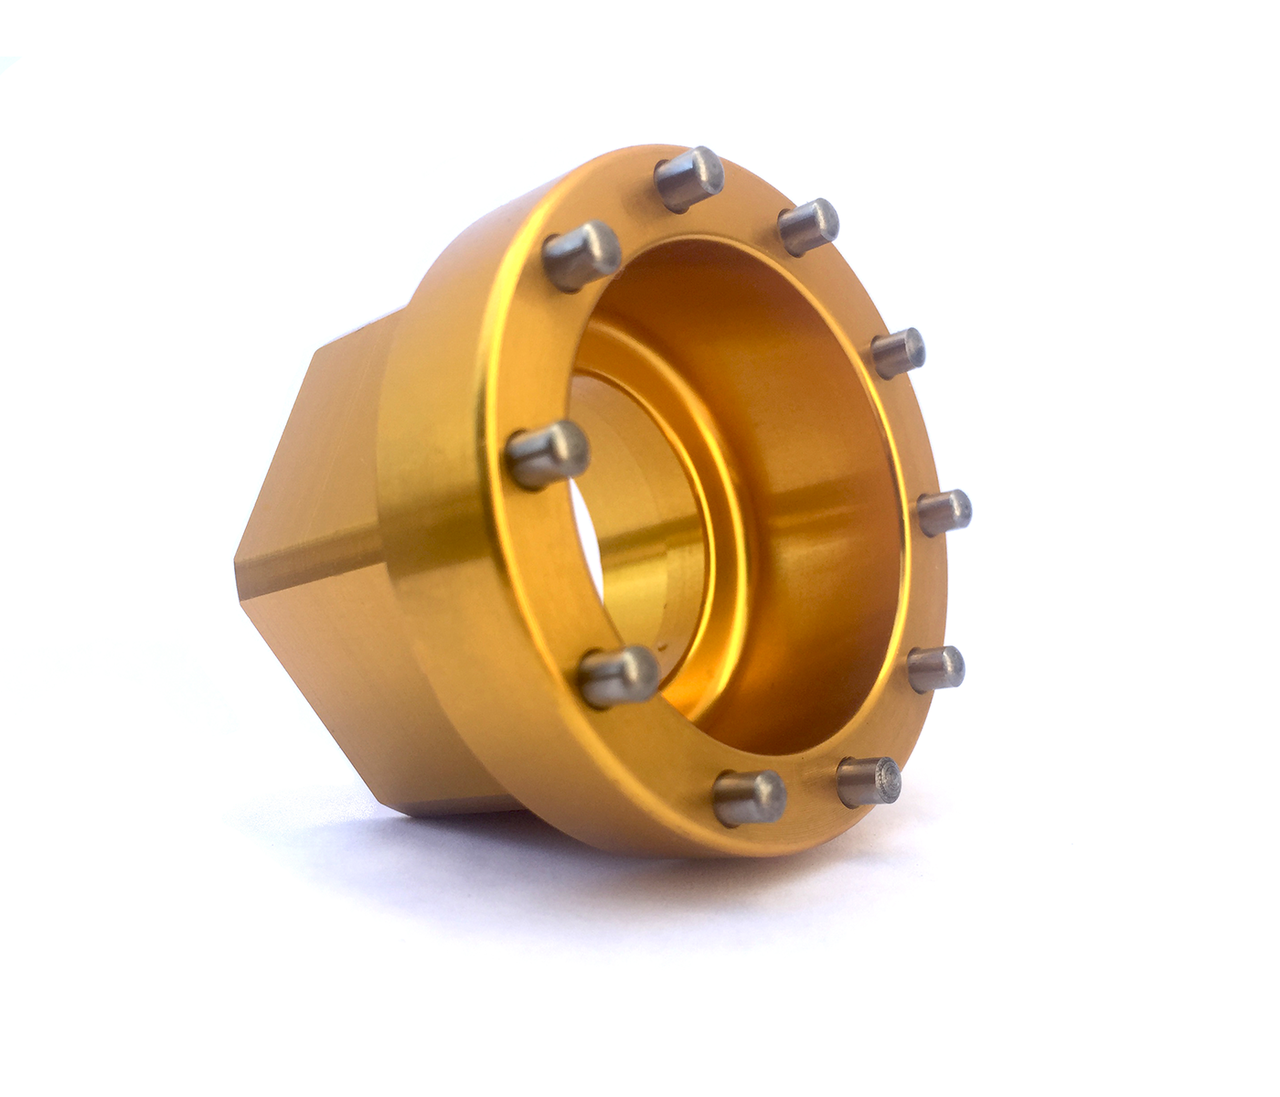 Enduro CT-004 - Rotor Crankset Lockring Tool (24mm spindles)